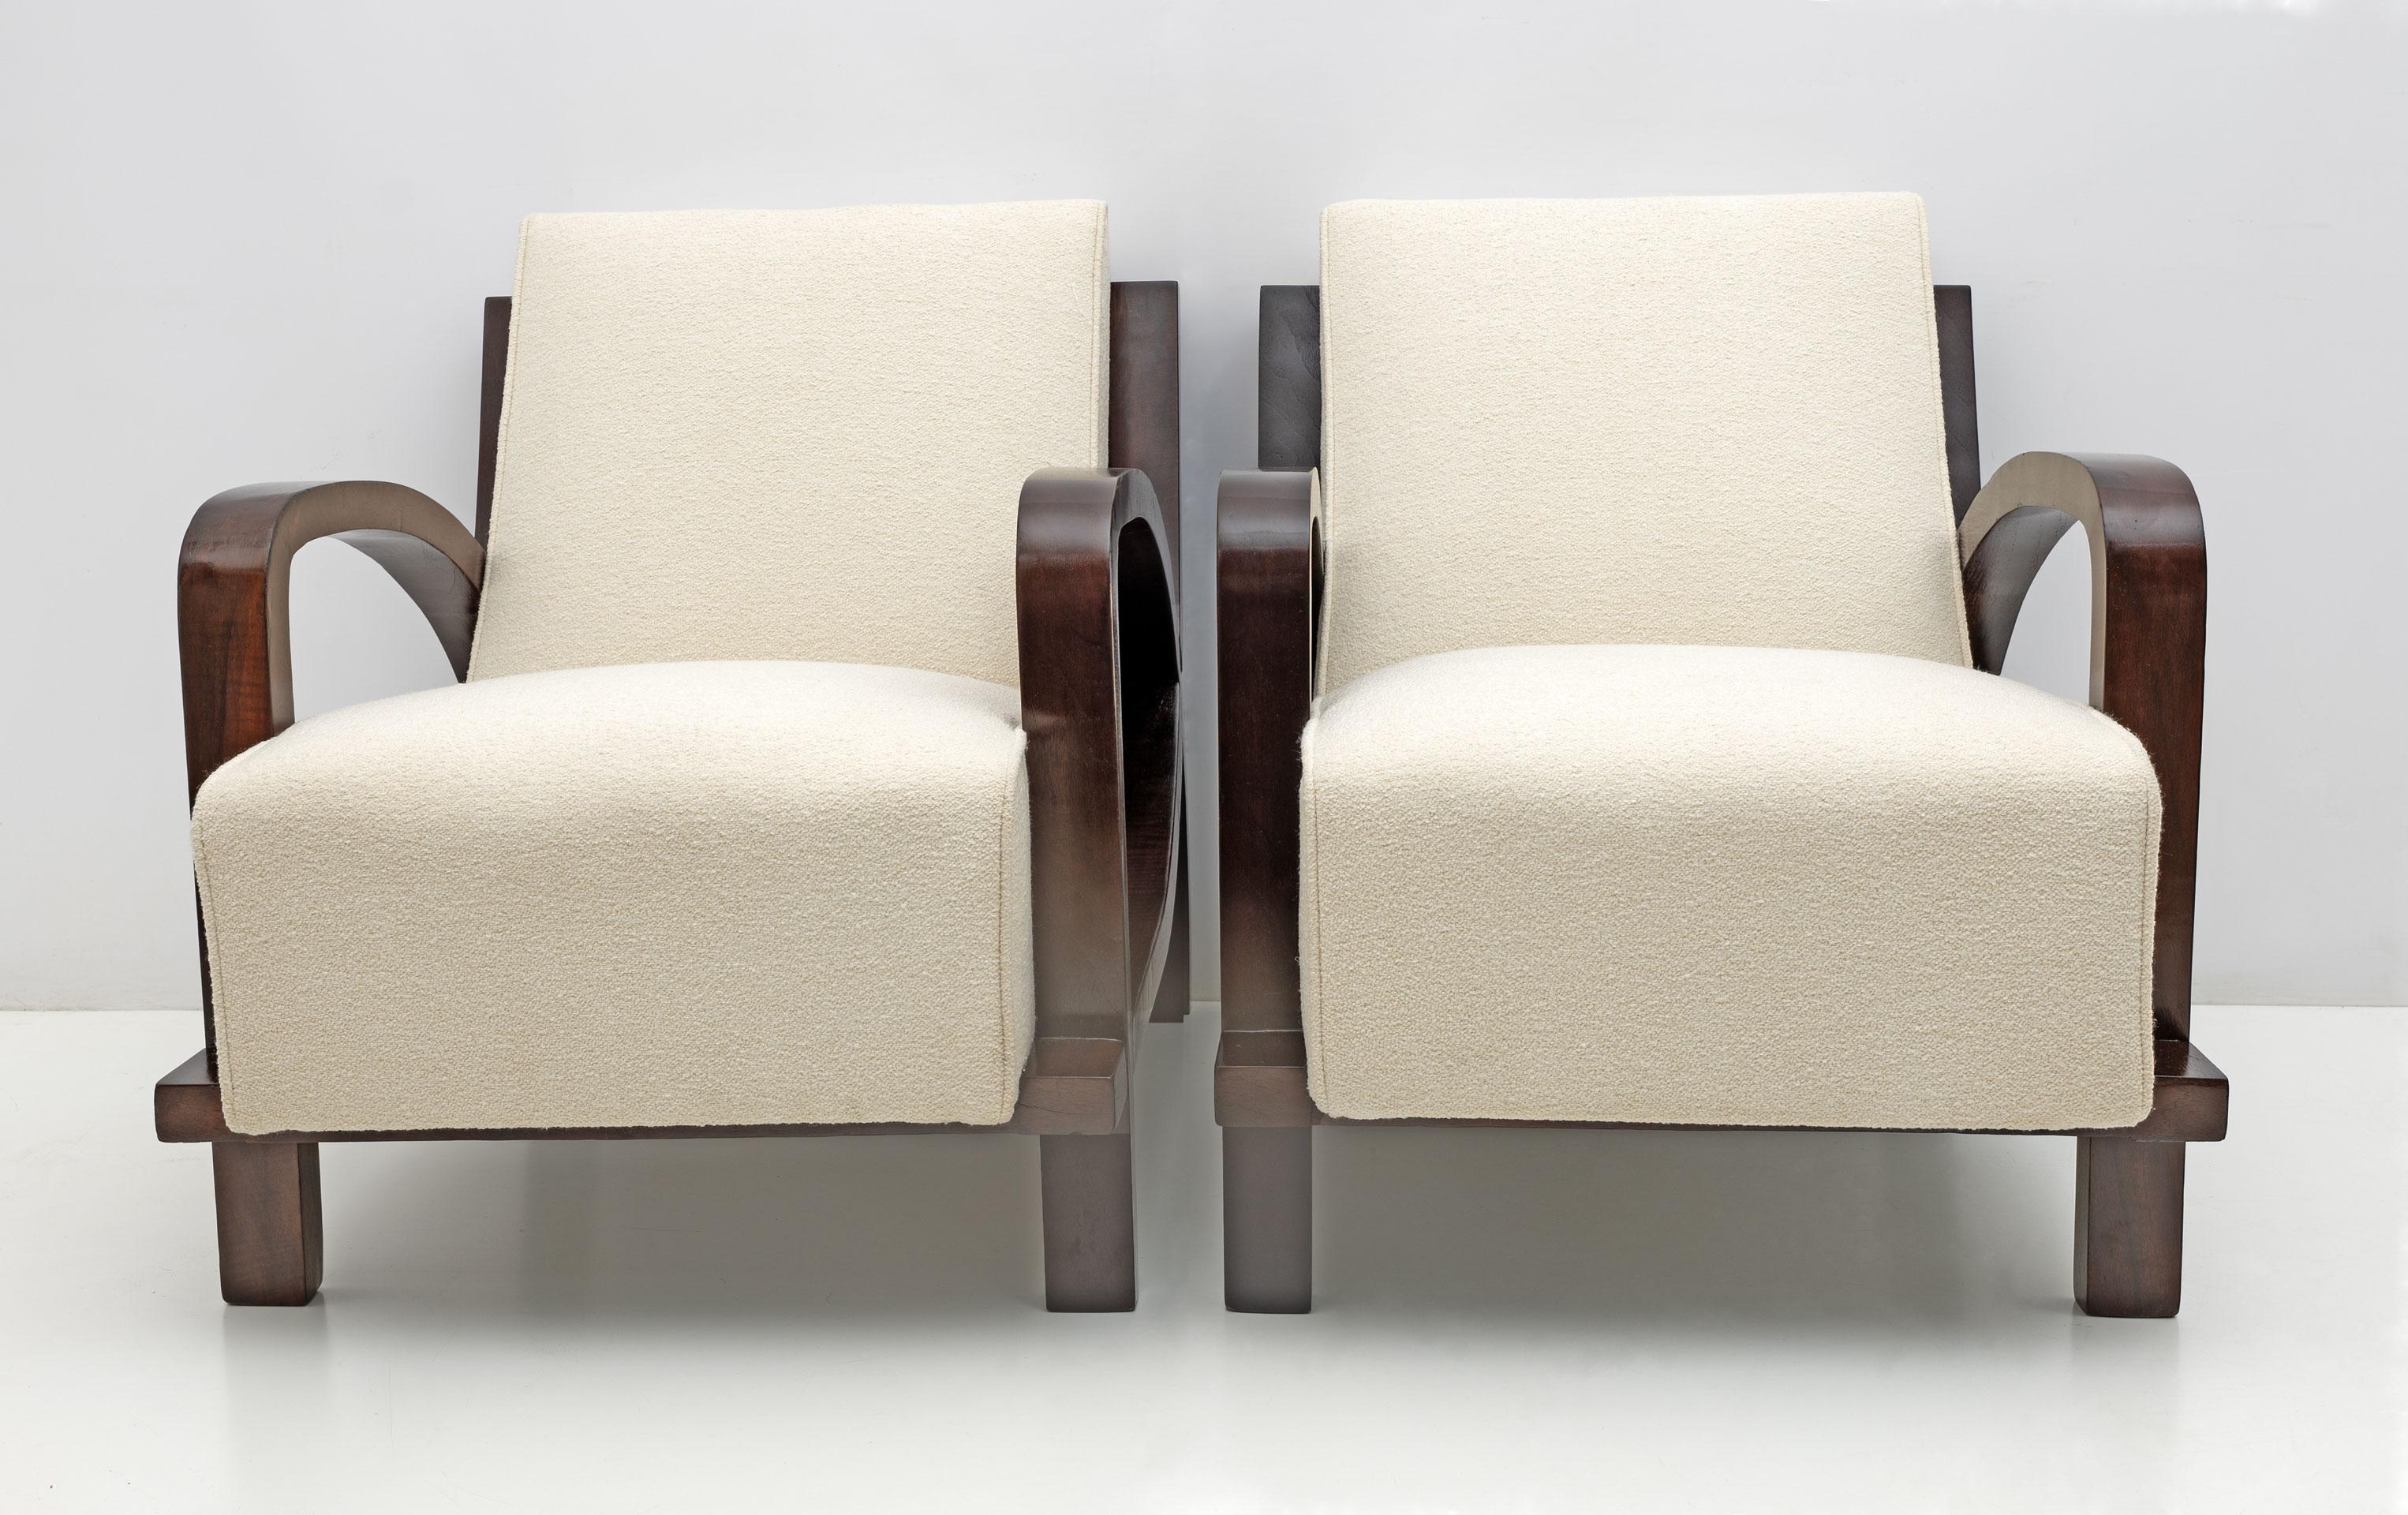 Außergewöhnliche Sessel, restauriert und mit feinem elfenbeinfarbenem Bouclè gepolstert. Diese Sessel haben ein sehr dynamisches und üppiges Aussehen, schön geschwungene und nussbaumfurnierte Arm- und Rückenlehnen, die natürlich mit der Polsterung